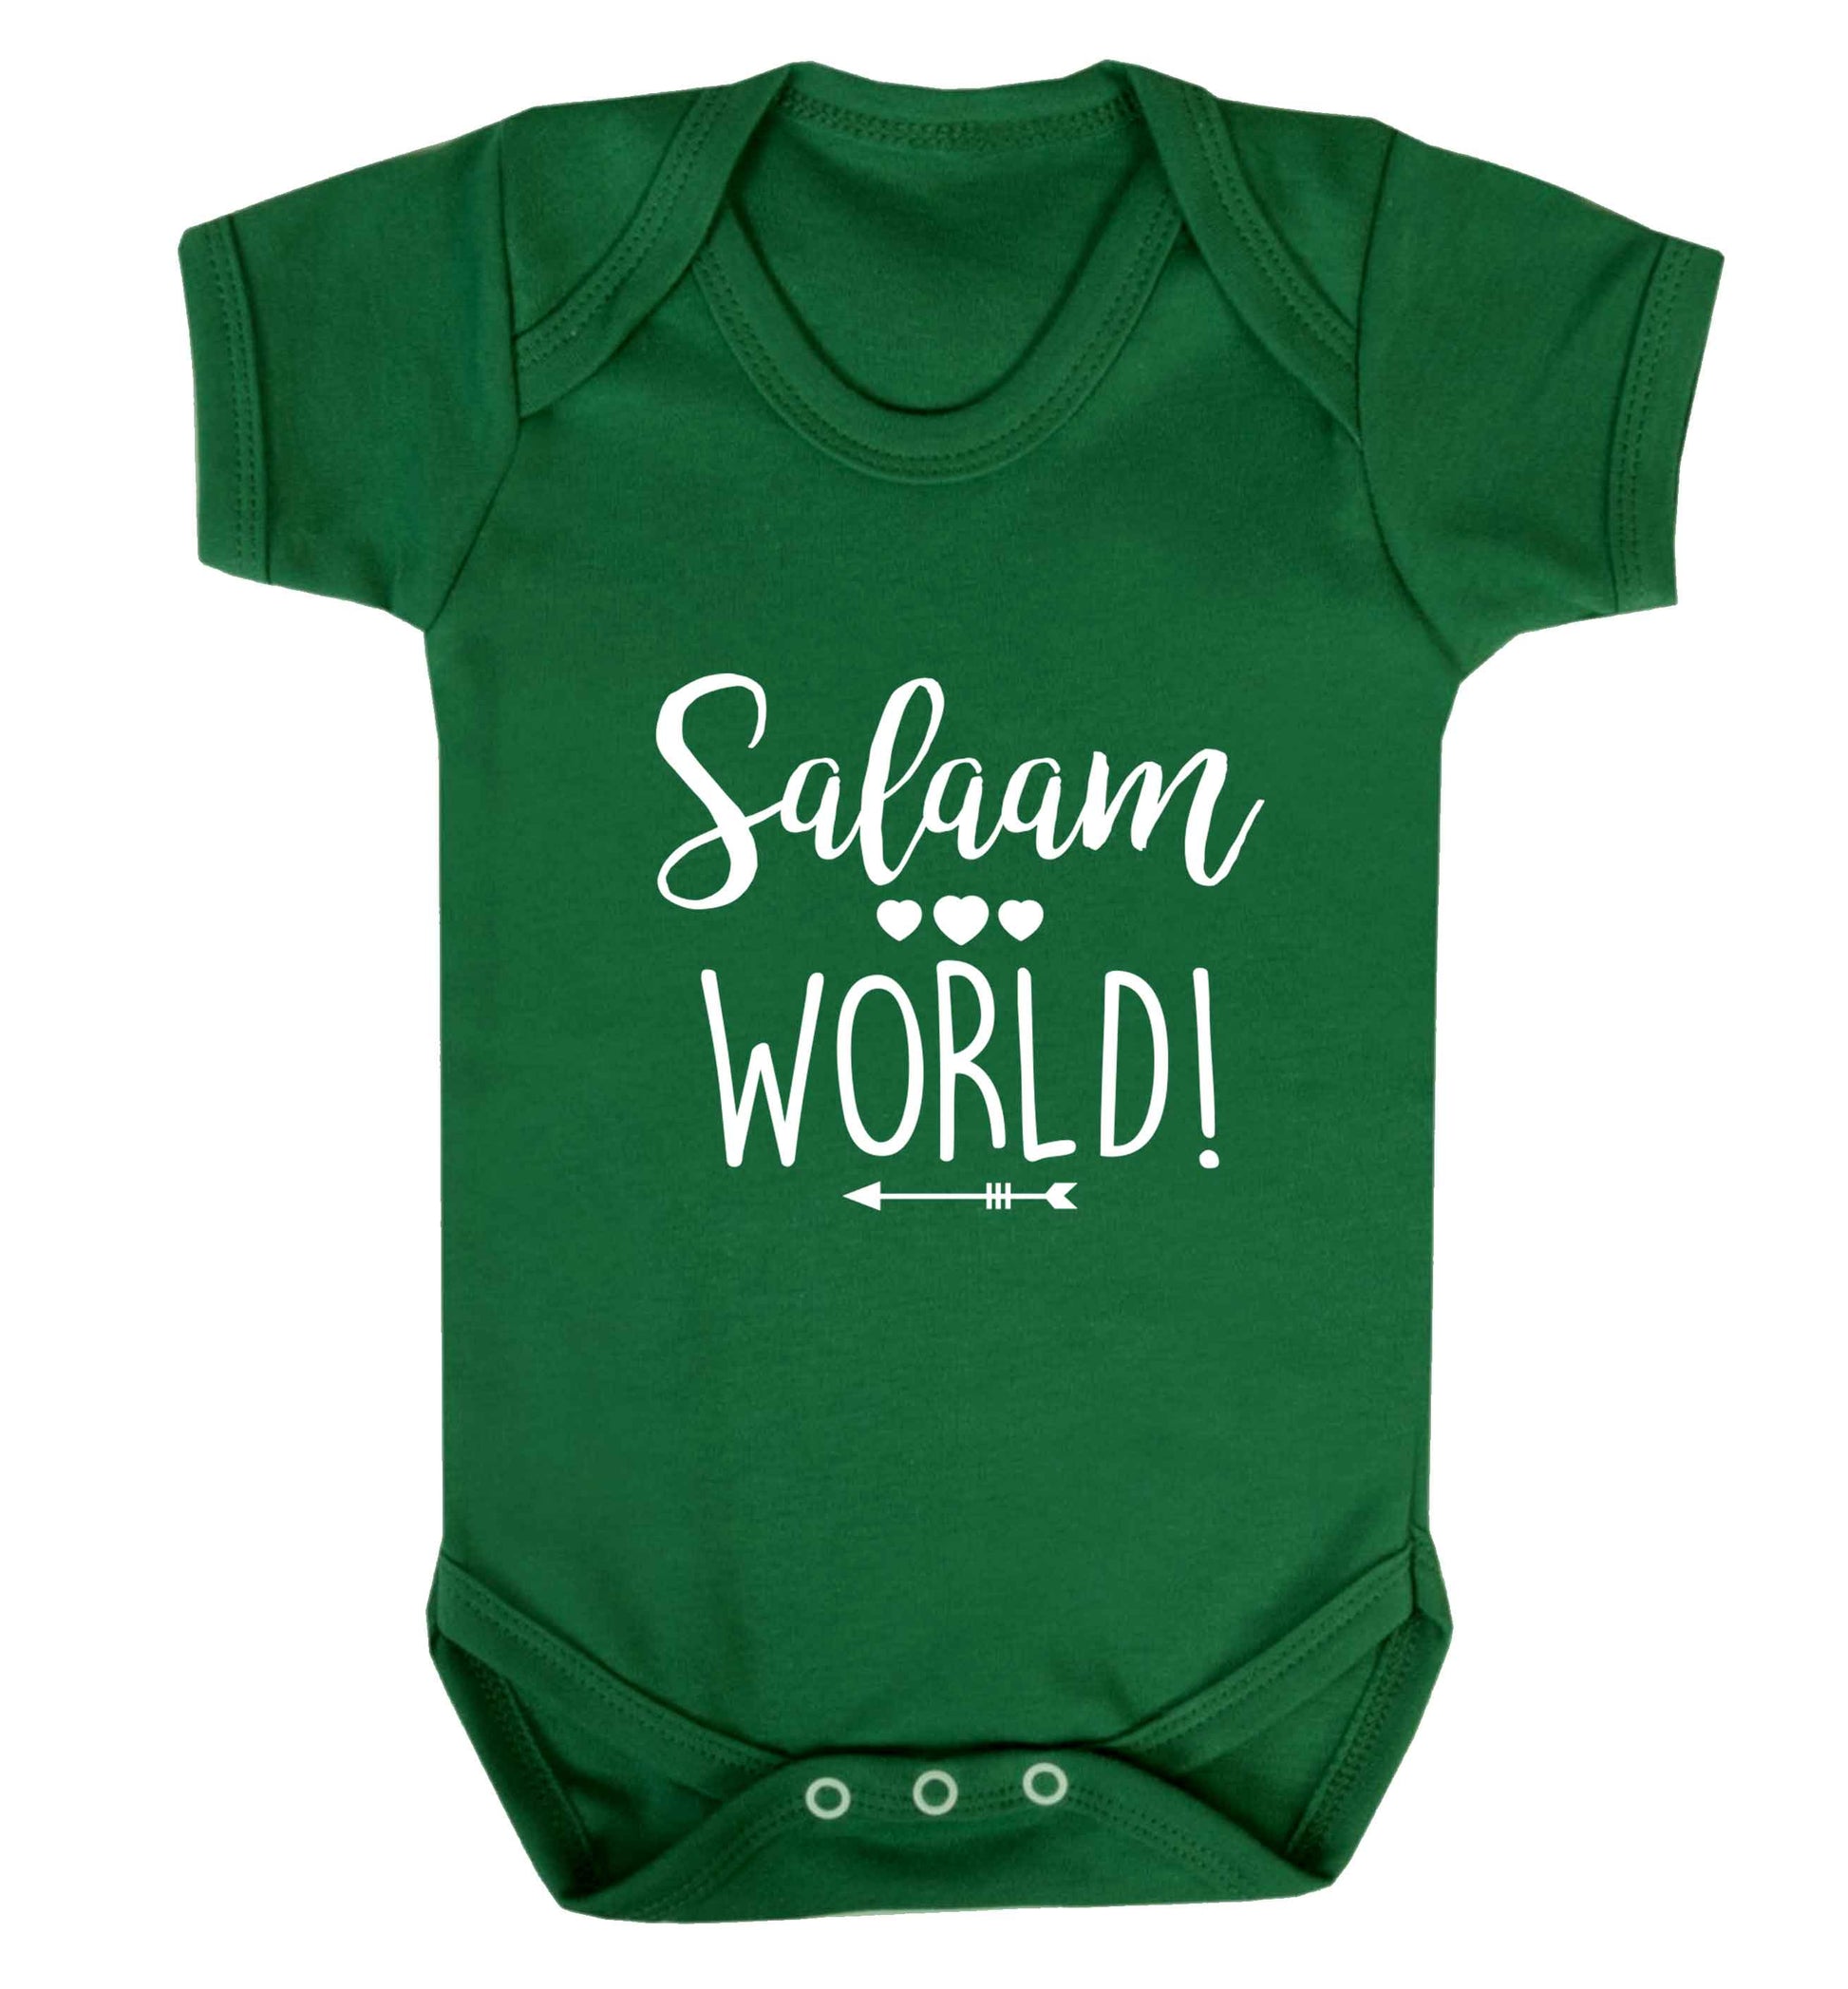 Salaam world baby vest green 18-24 months